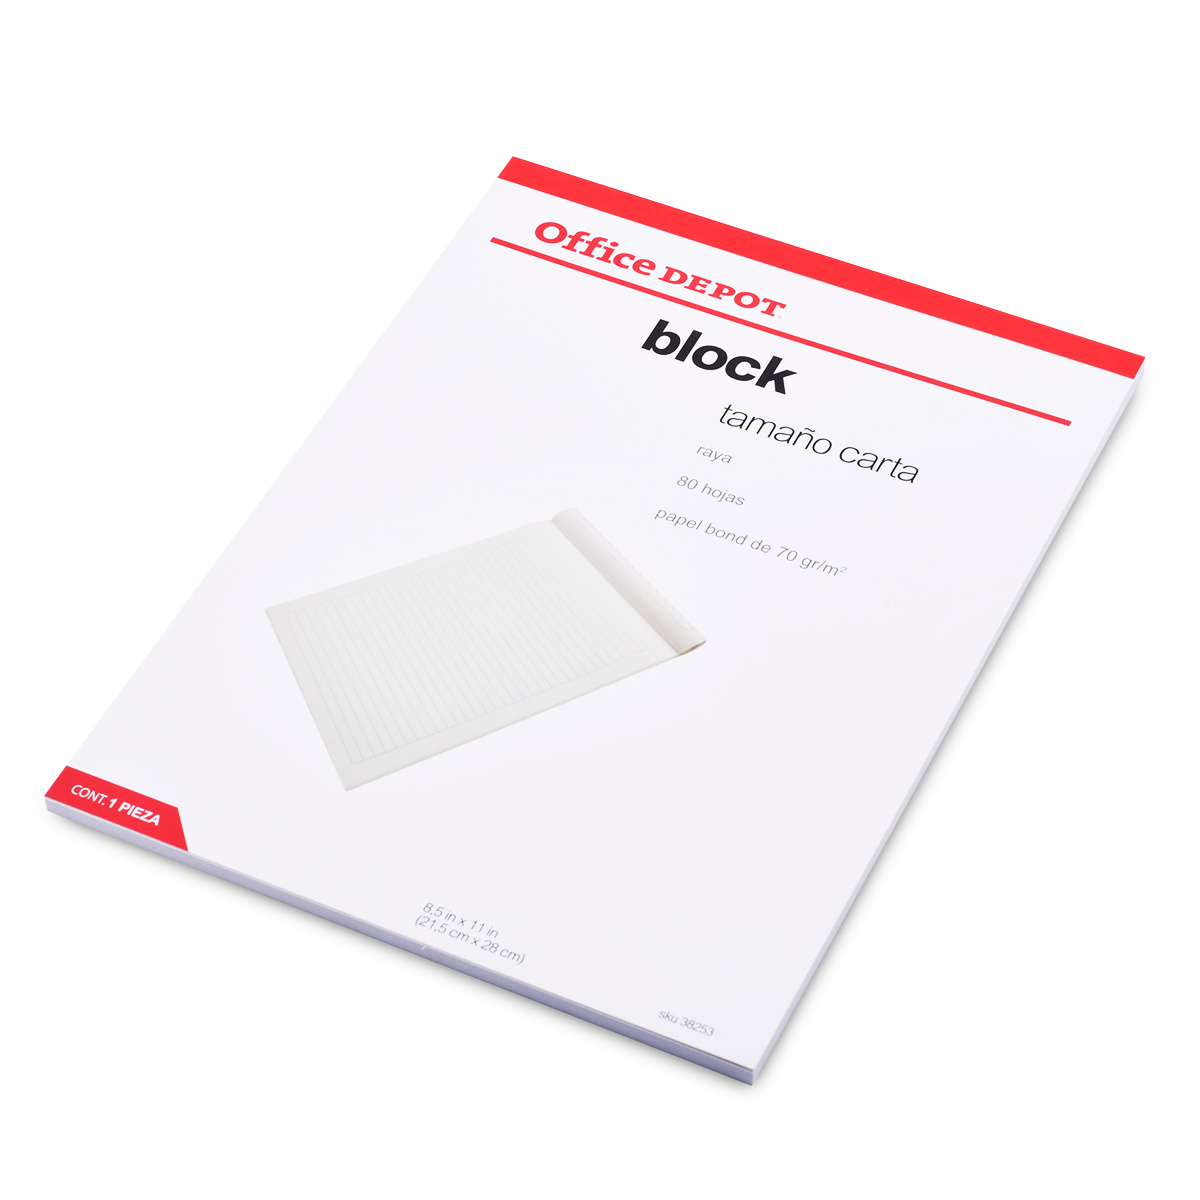 Caja de Papel Reciclado Office Depot Ecológico Carta 5000 hojas Blanco